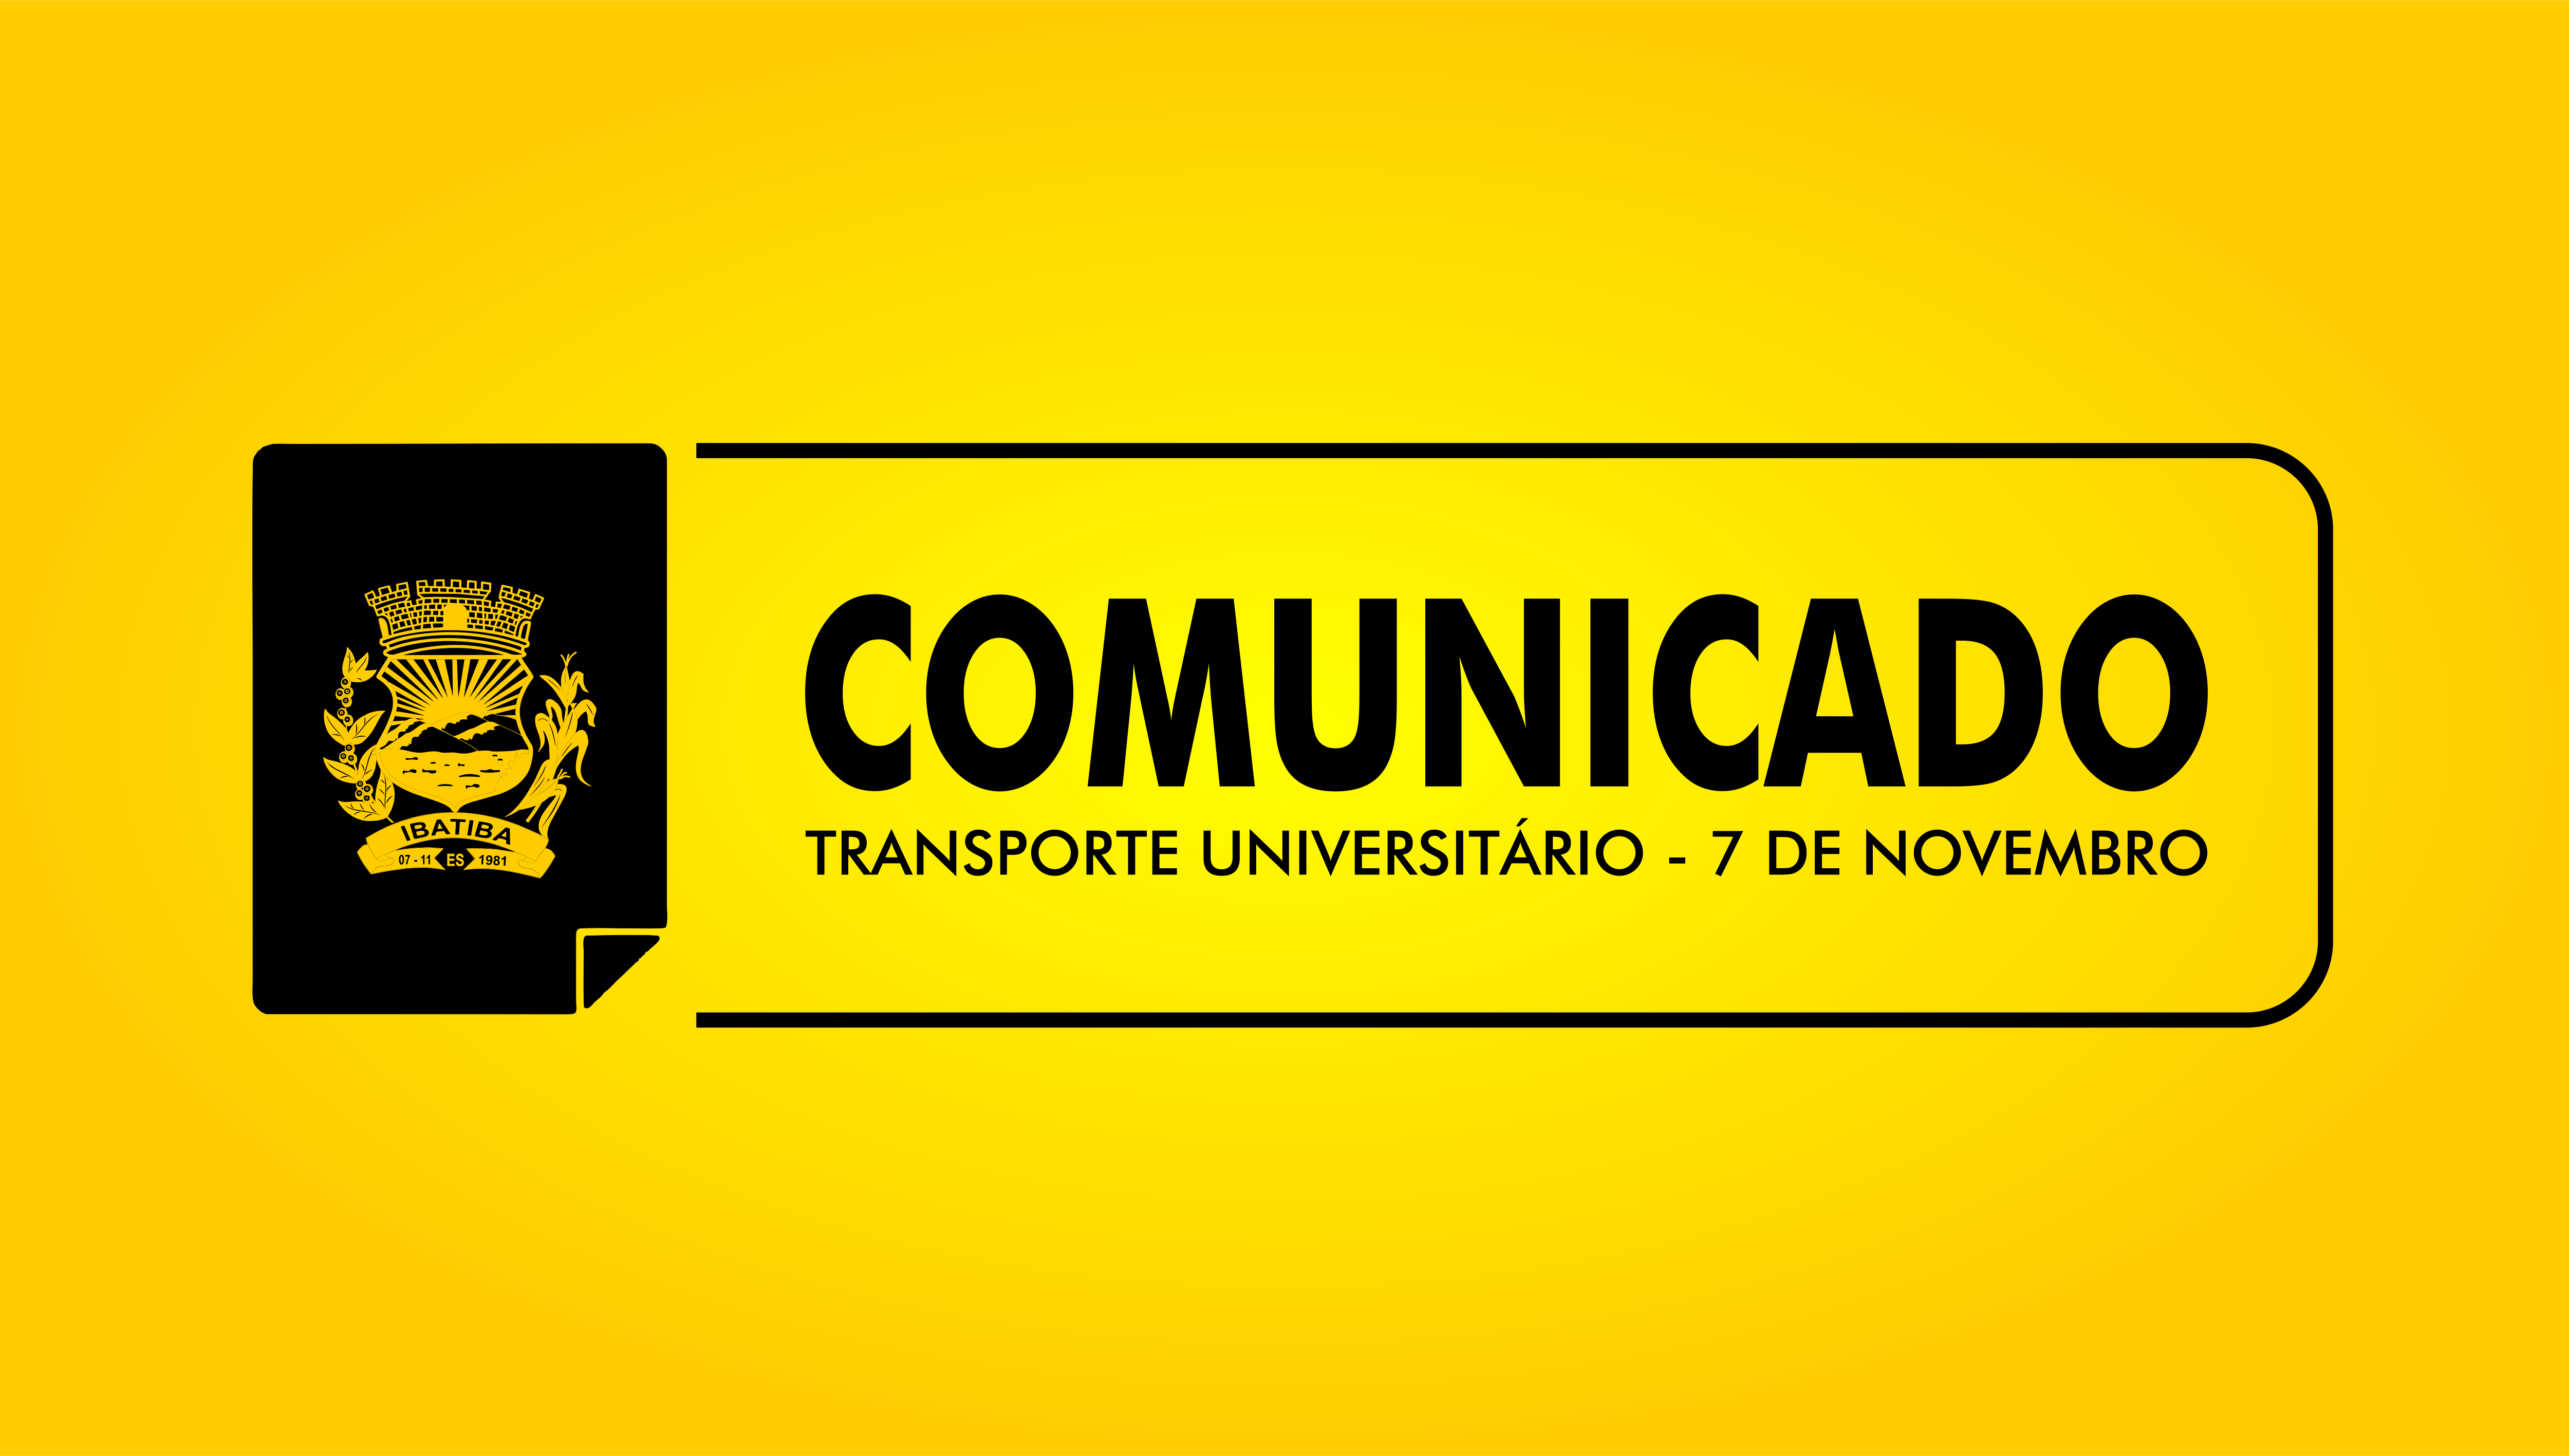 Comunicado: Transporte Universitário